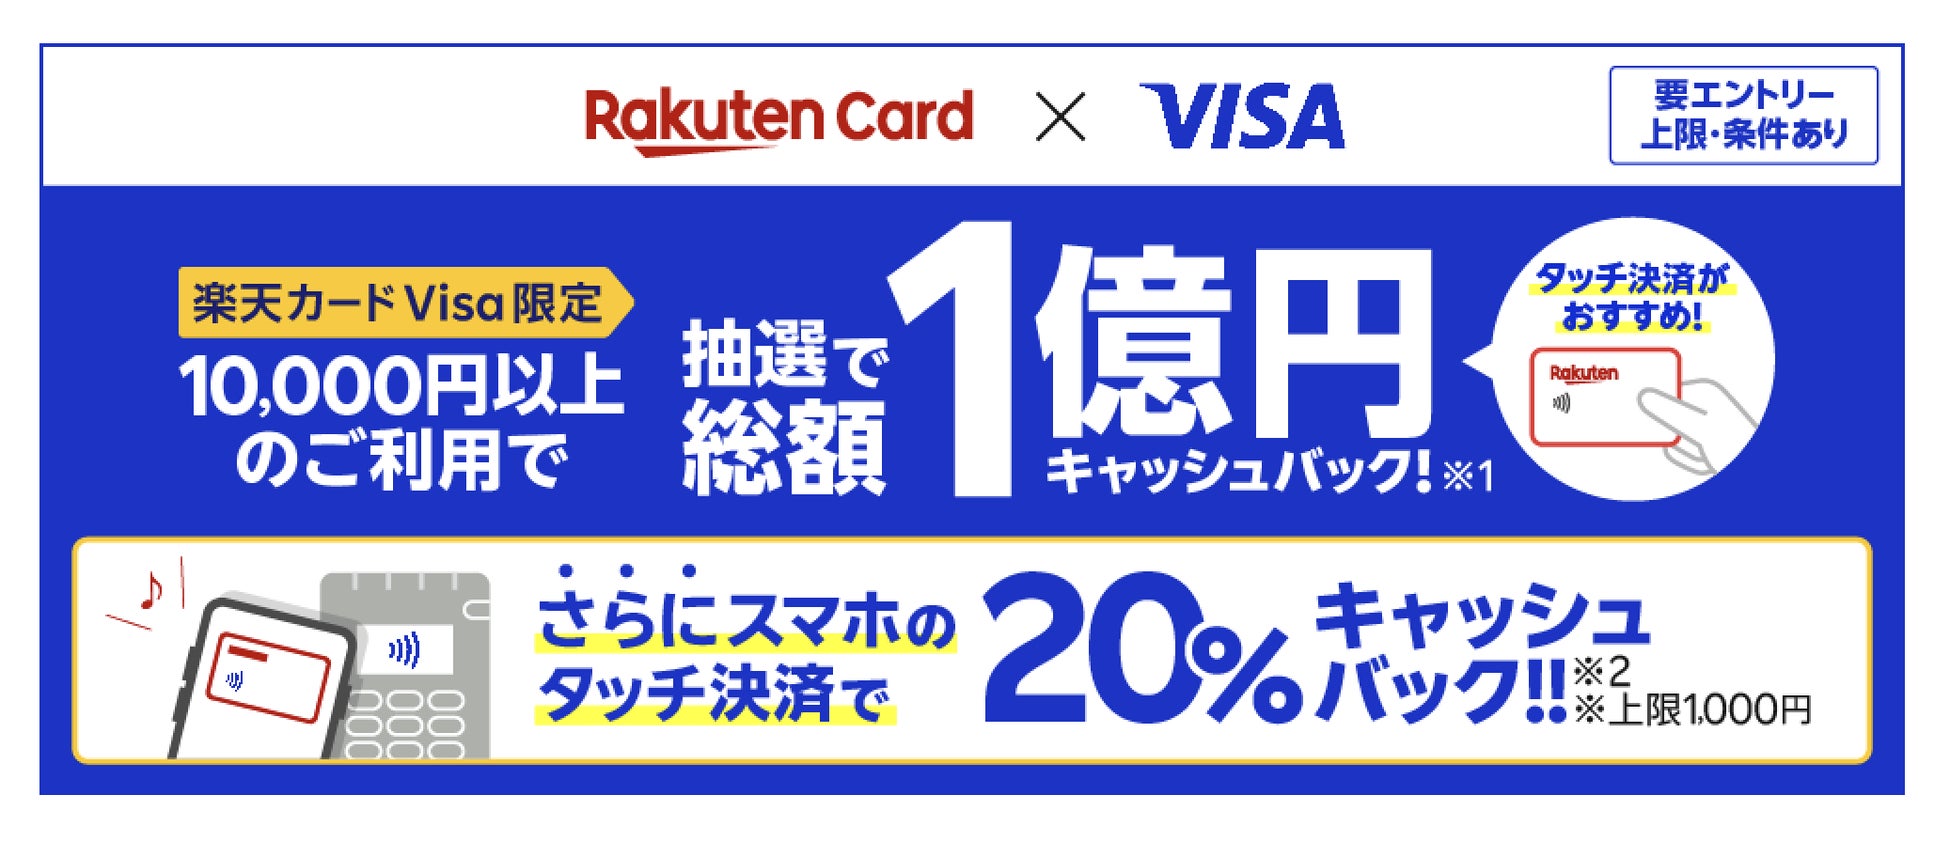 楽天カード、「楽天カード Visa」限定で総額1億円が抽選でキャッシュバックされるキャンペーンを開催